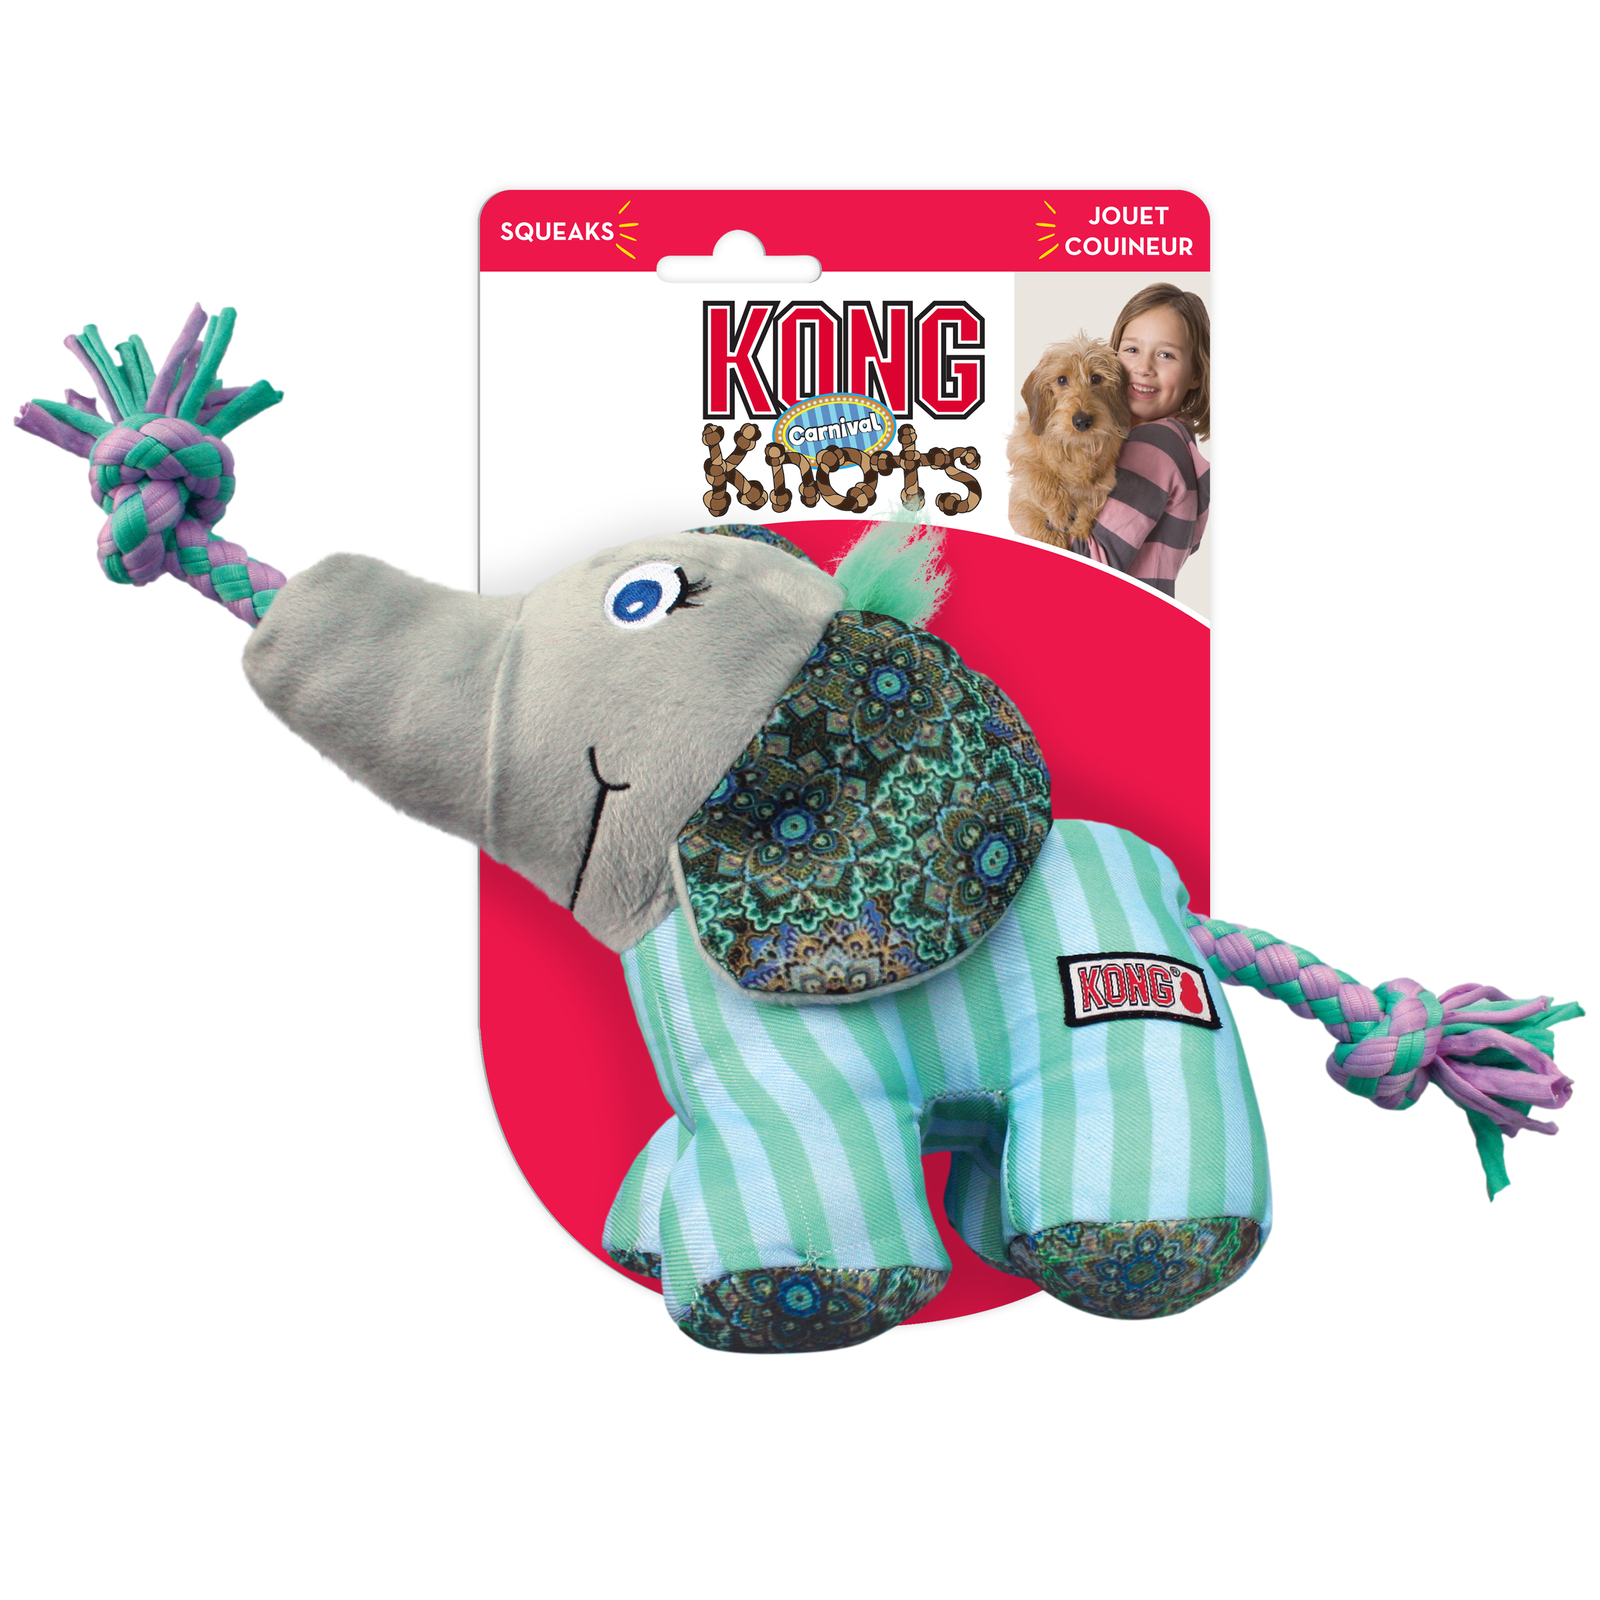 KONG Knots Carnival Canvas Plush Dog Toy with Rope - Elephant - Medium/Large - 3 Unit/s image 1